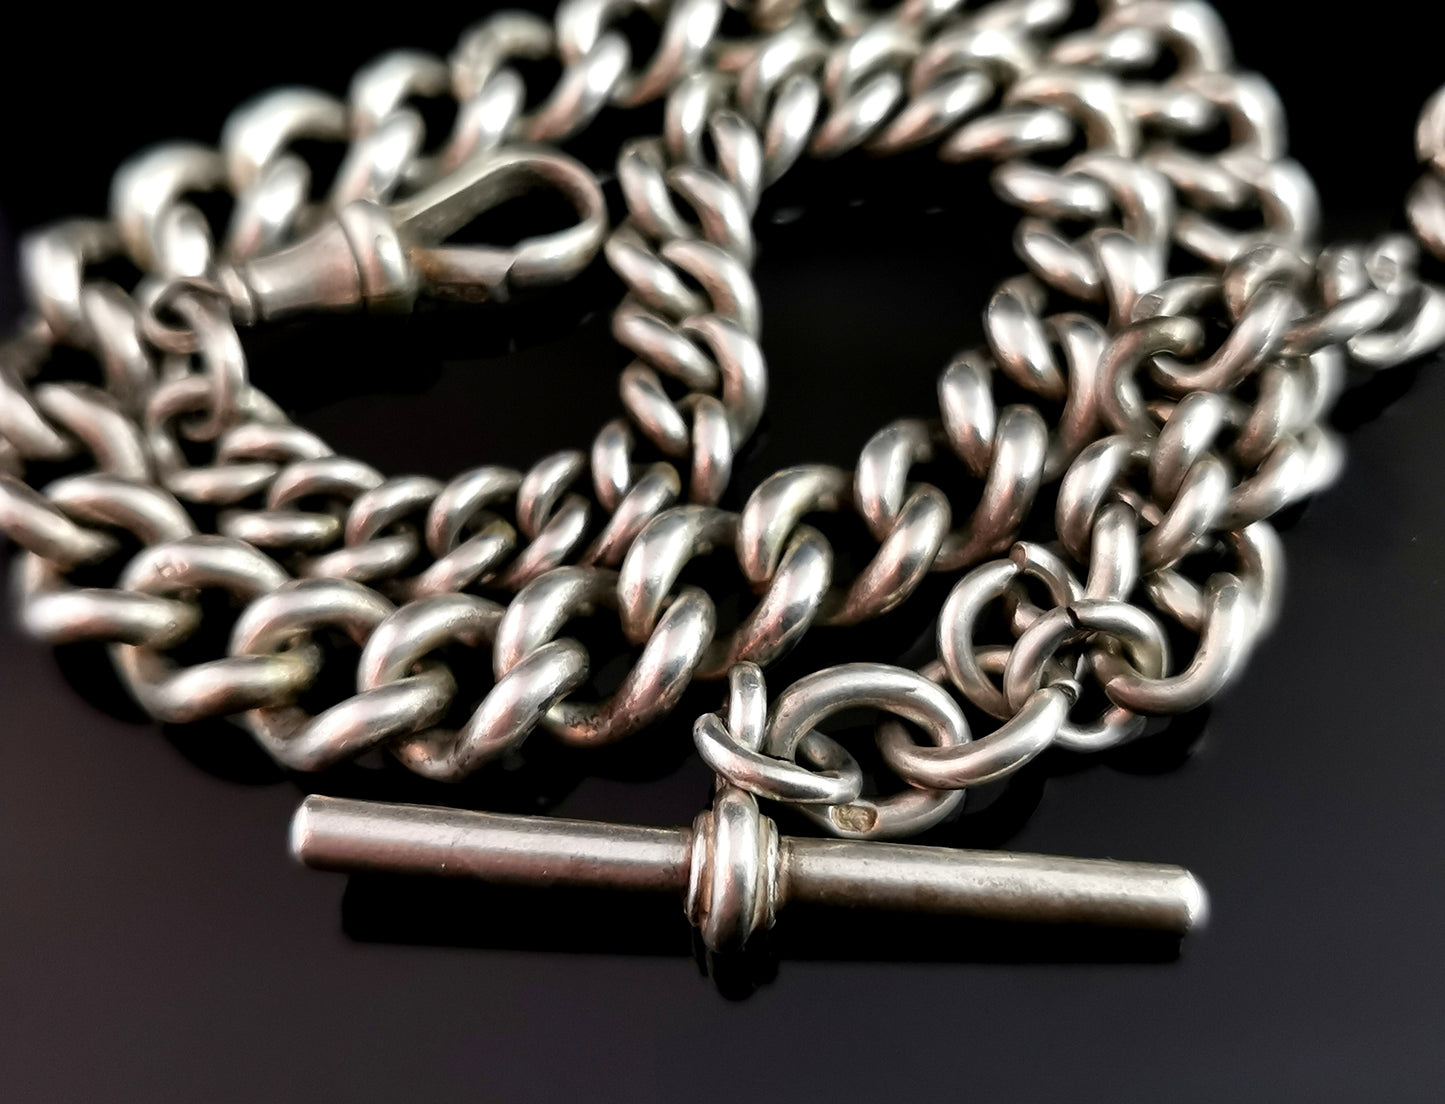 Antique silver albert chain, watch chain, Victorian